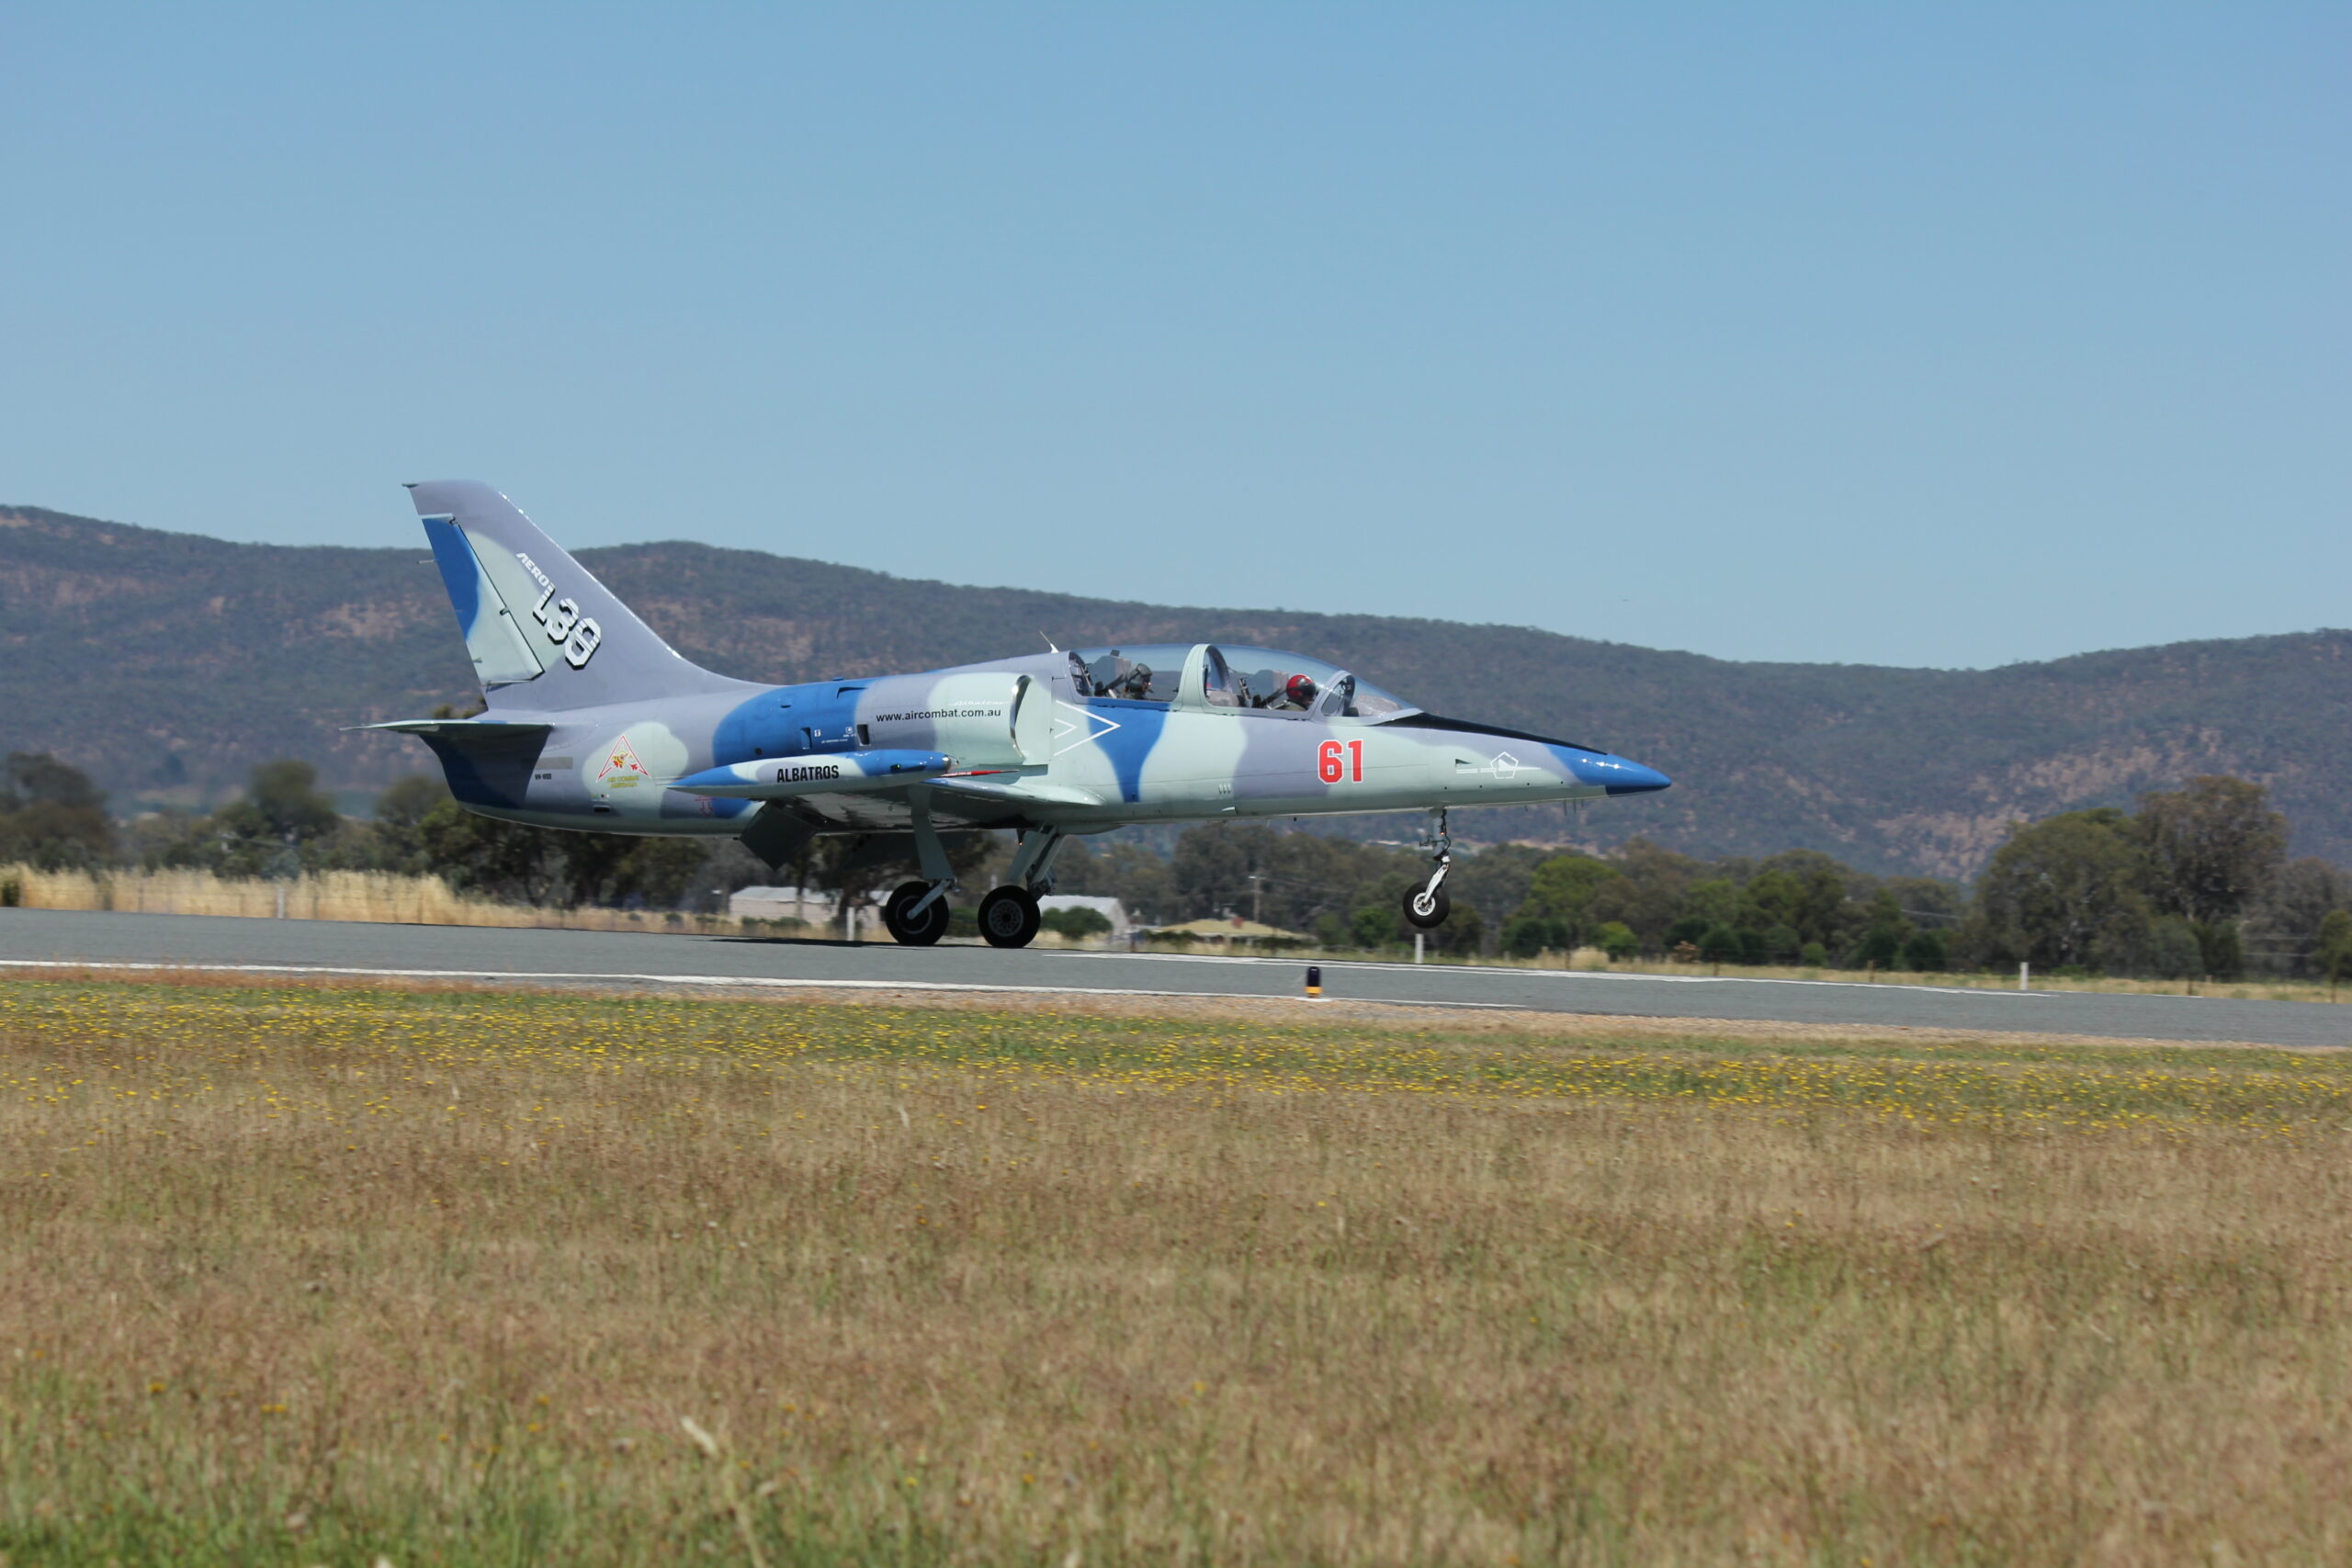 Sydney 30 Minute Jet Fighter Flight